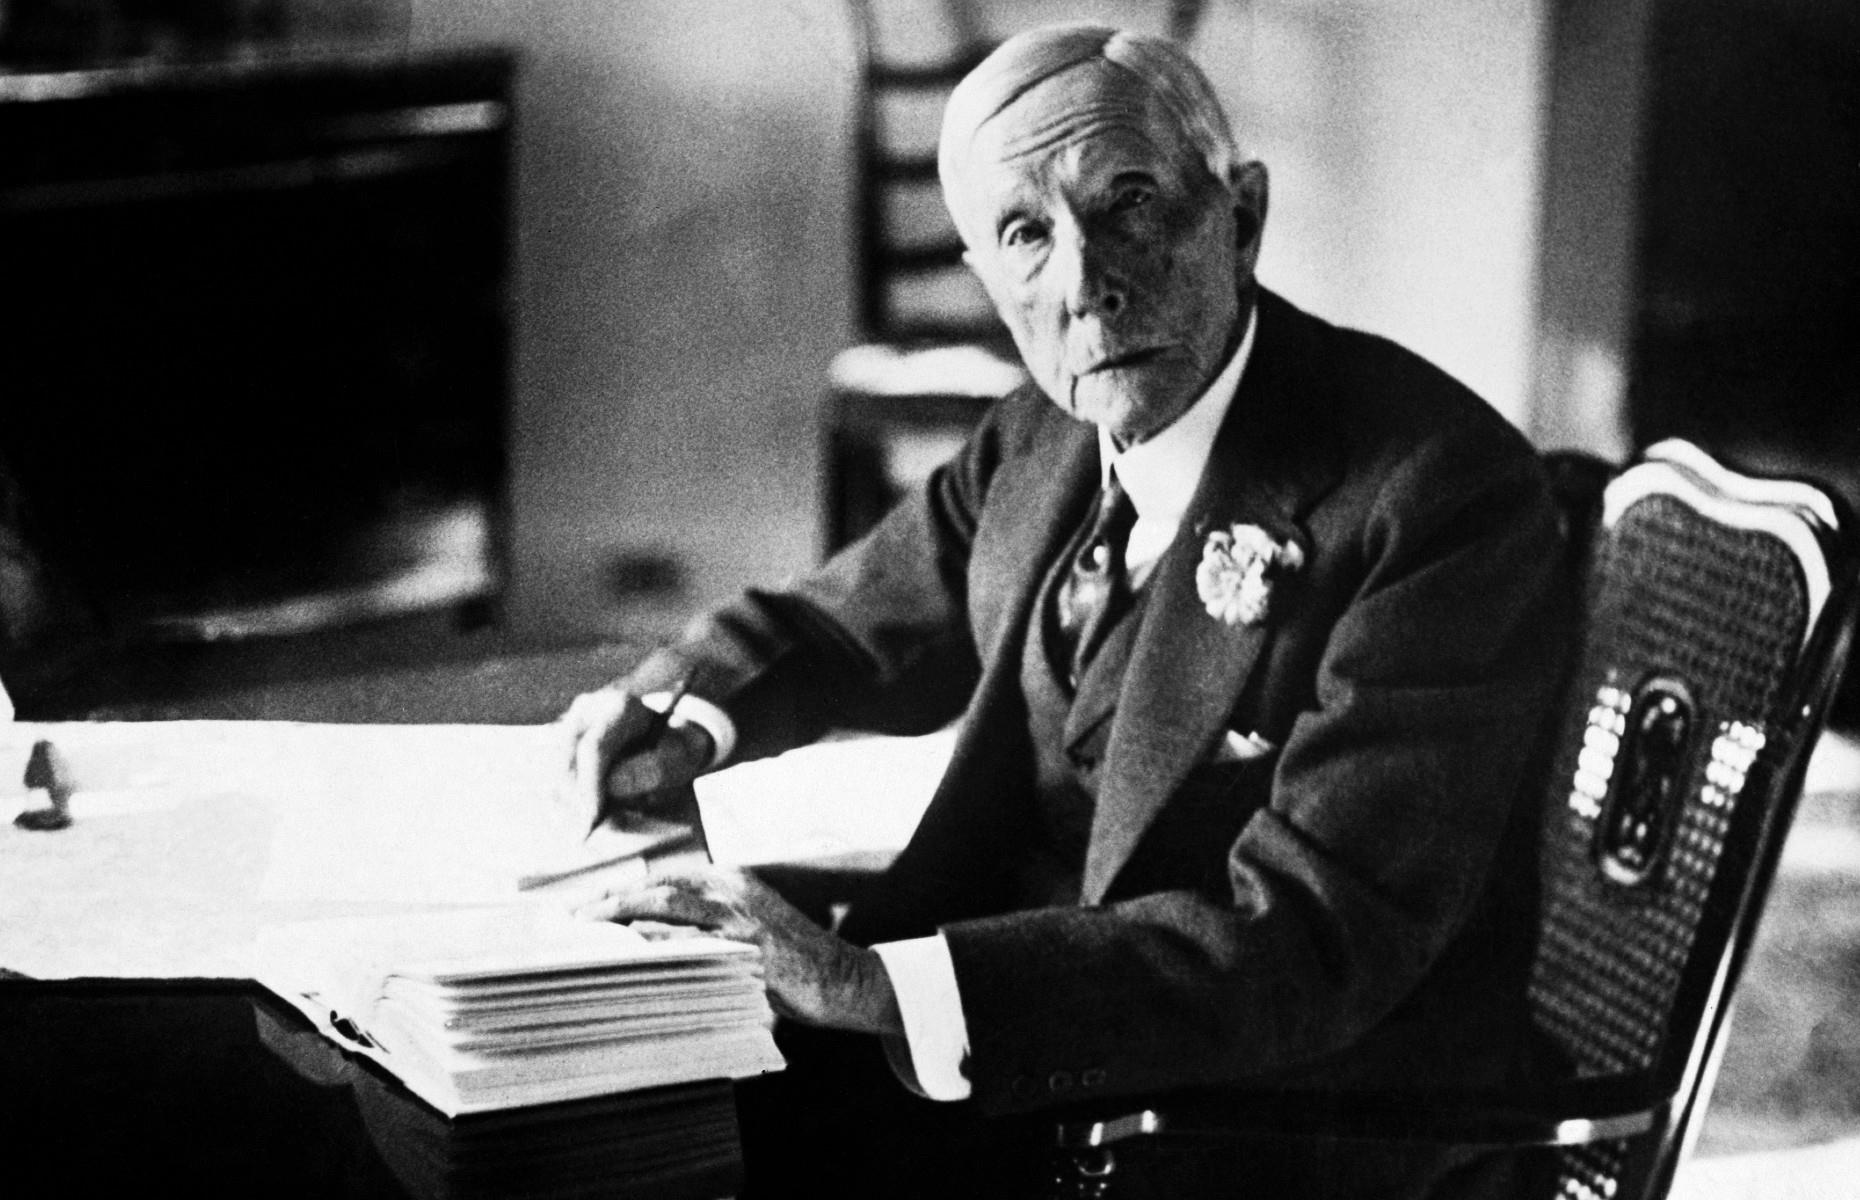 John D. Rockefeller: A História e o Legado do Magnata dos Negócios (10x1) 